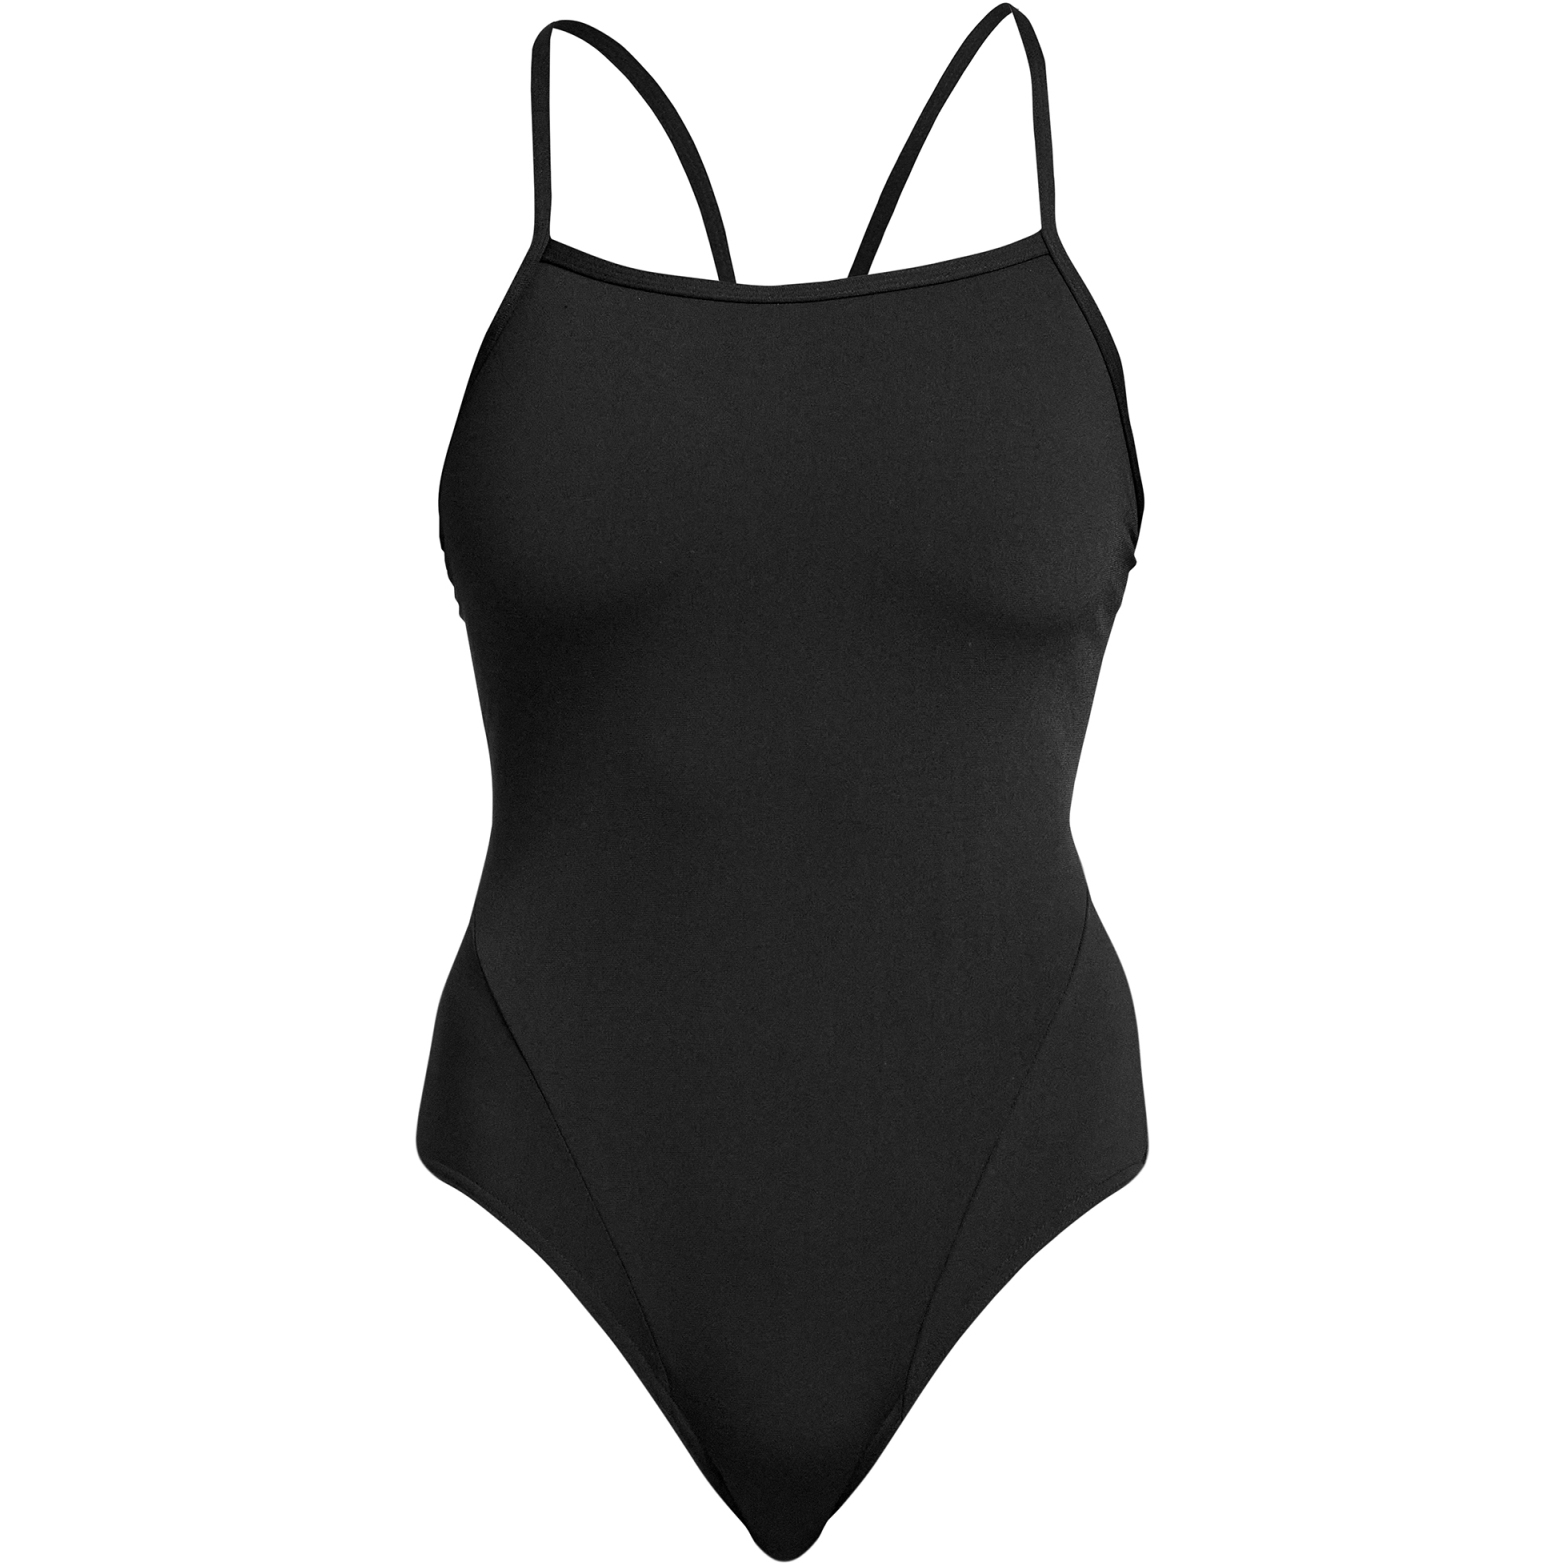 Produktbild von Funkita Single Strap Badeanzug Damen - Still Schwarz